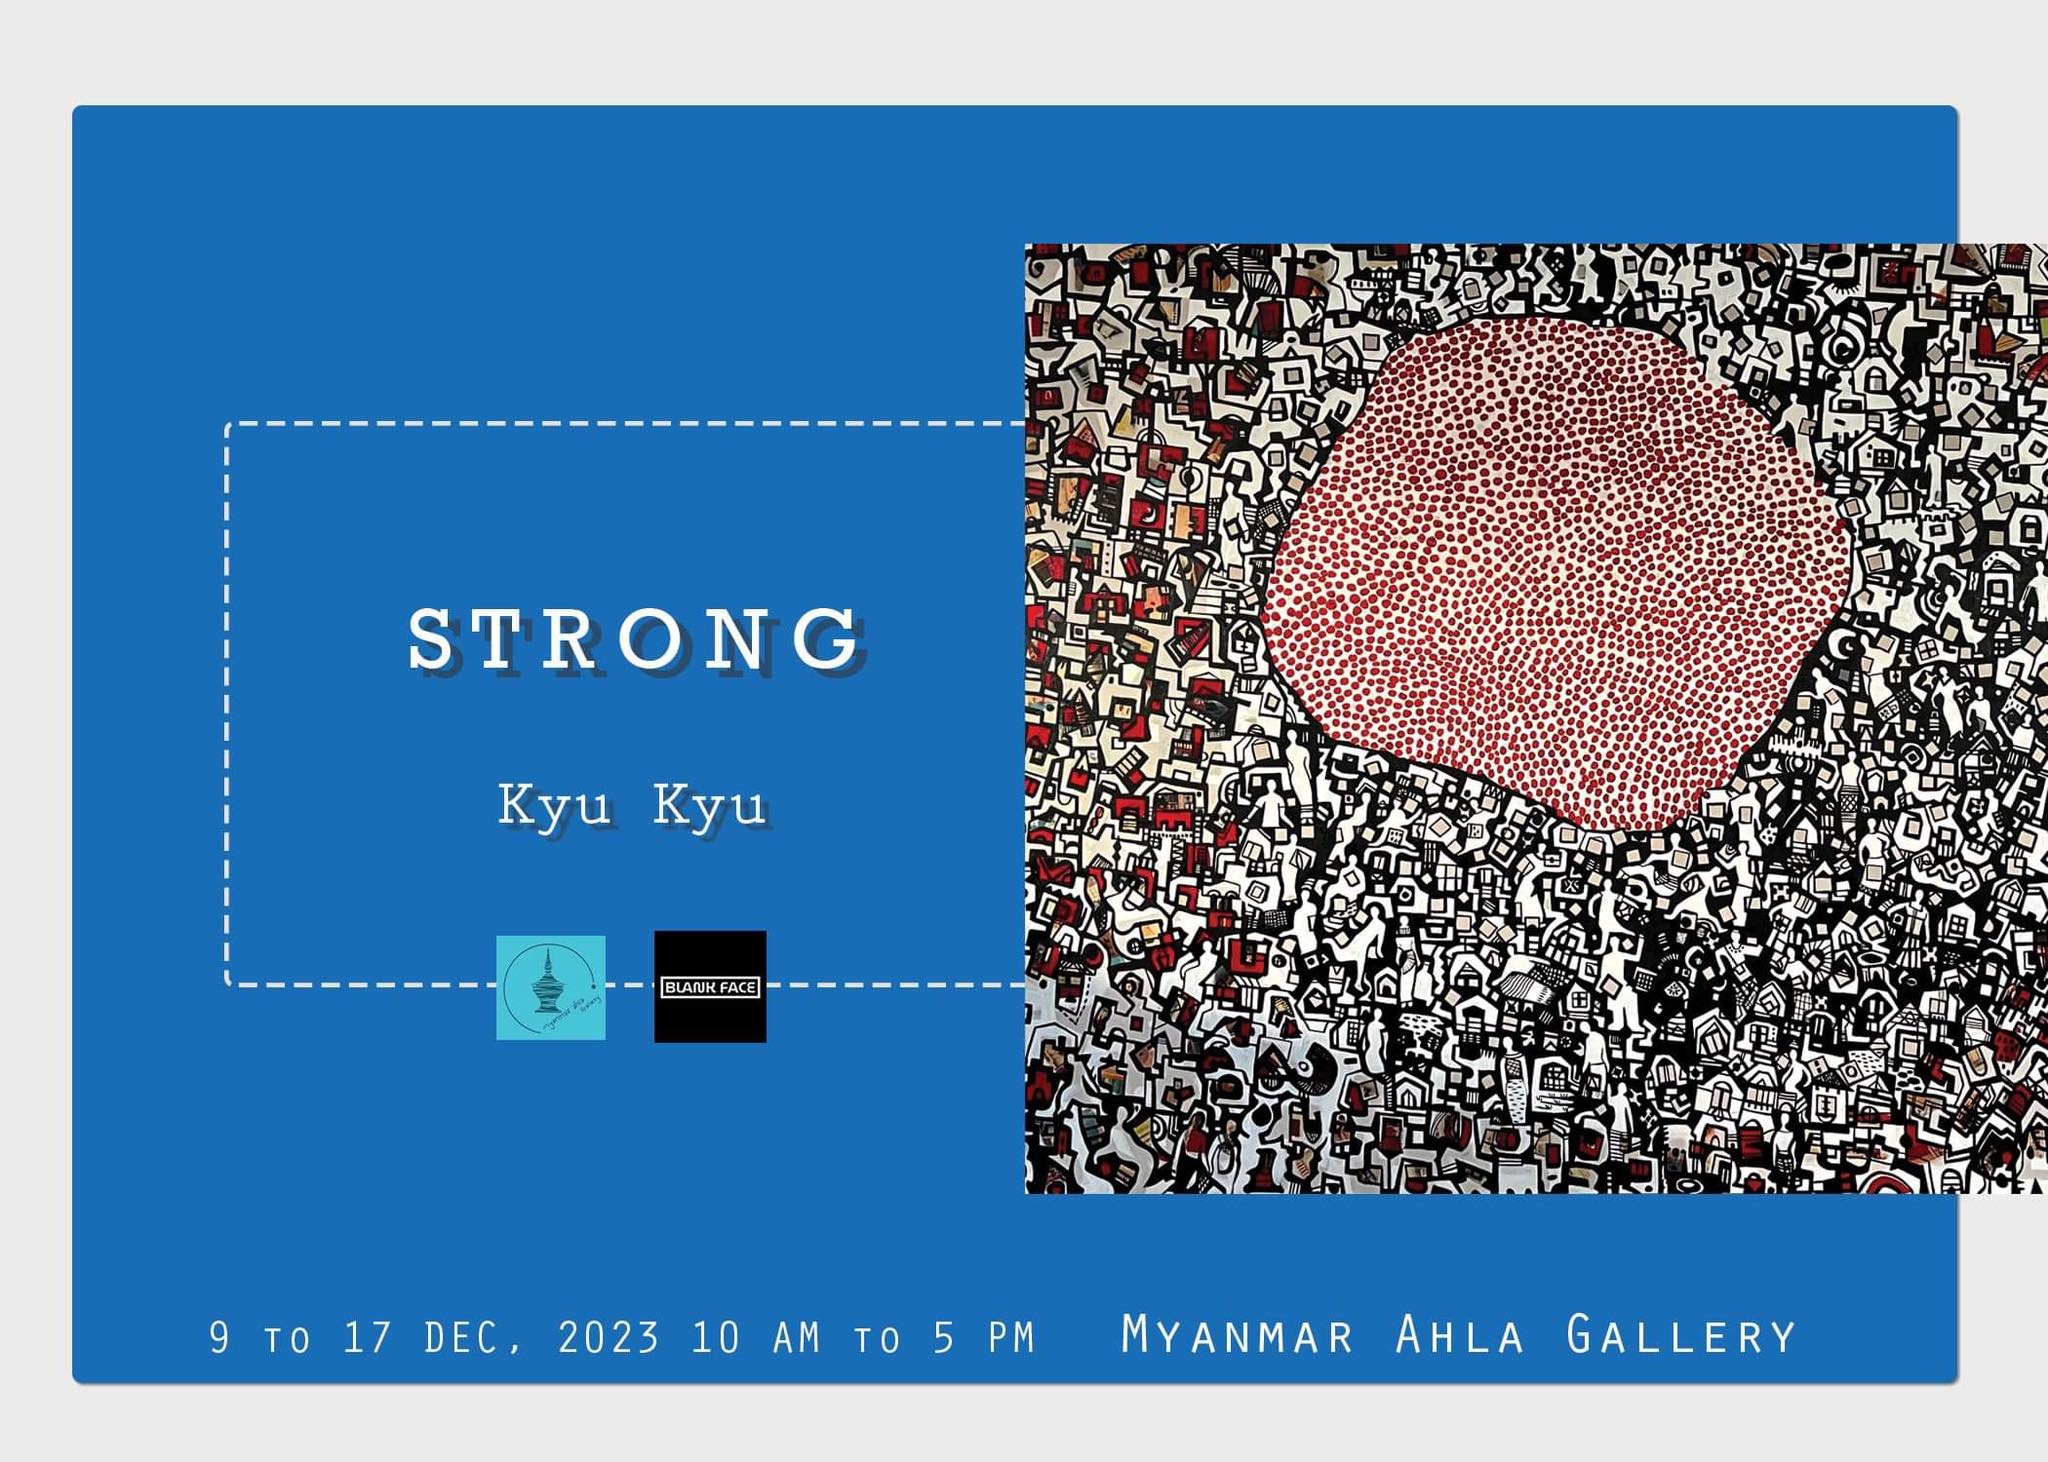 Strong - Kyu Kyu Event